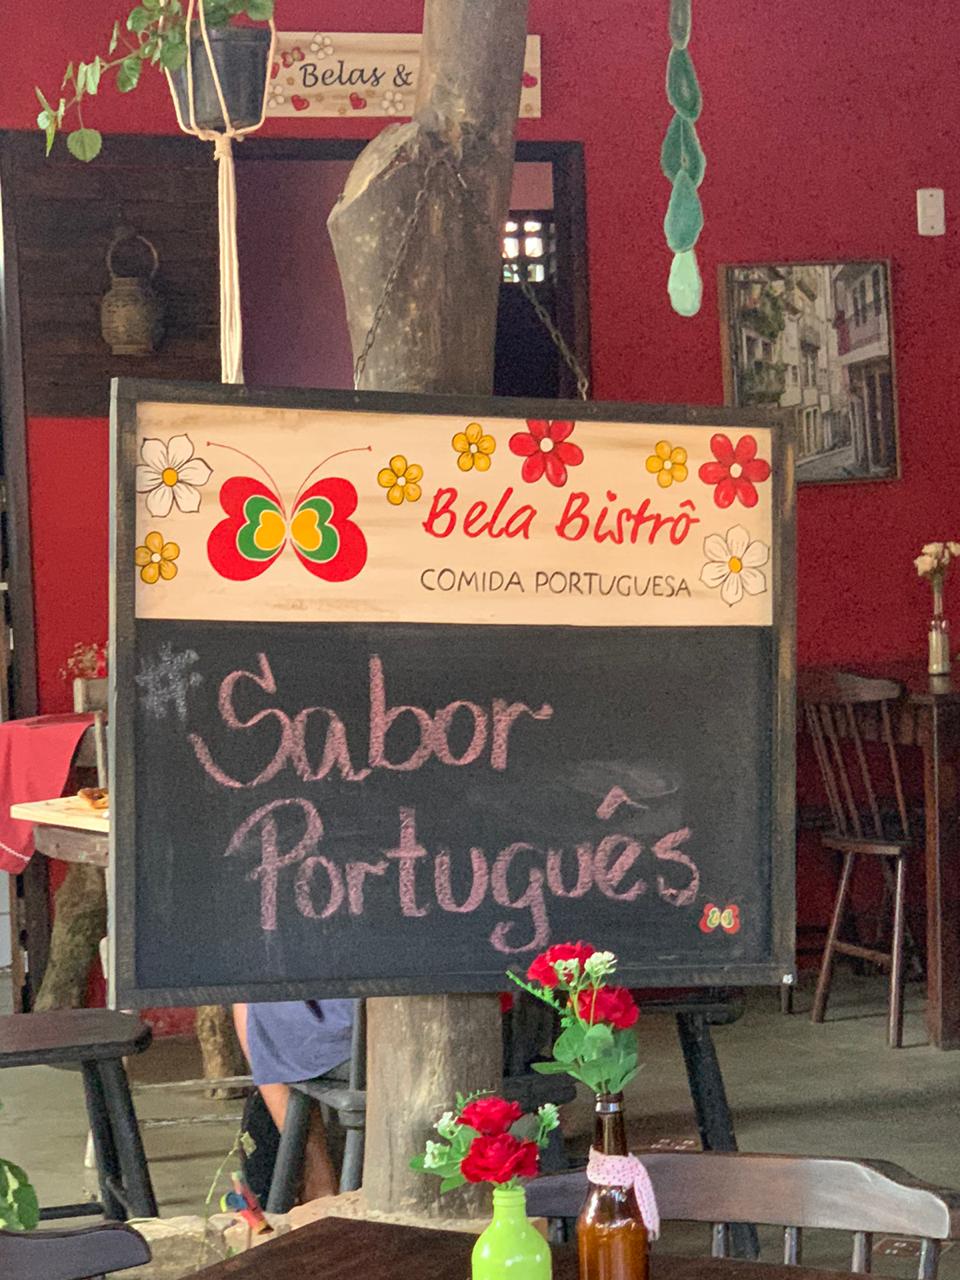 A melhor comida portuguesa